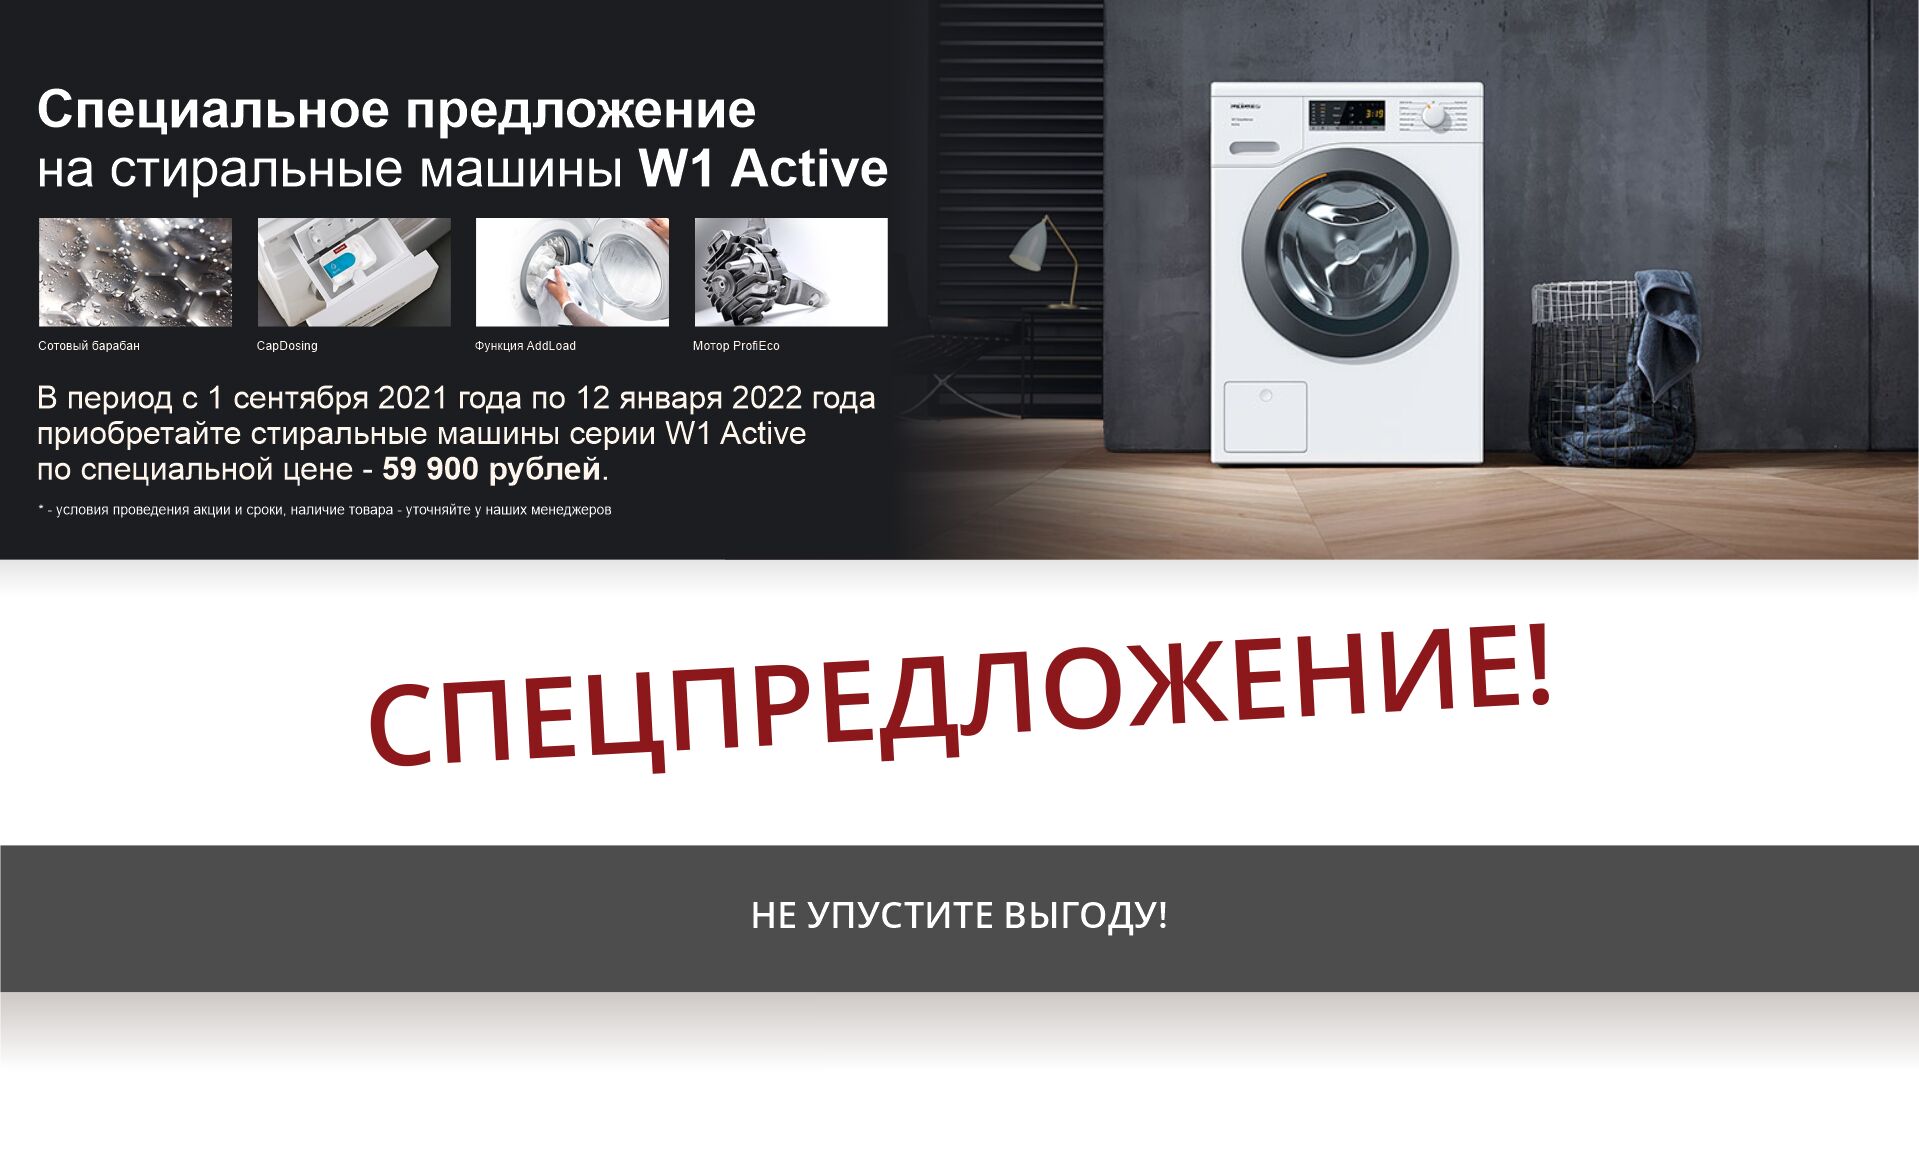 В период с 1 сентября 2021 года по 12 января 2022 года приобретайте стиральные машины серии W1 Active по специальной цене - 59 900 рублей.